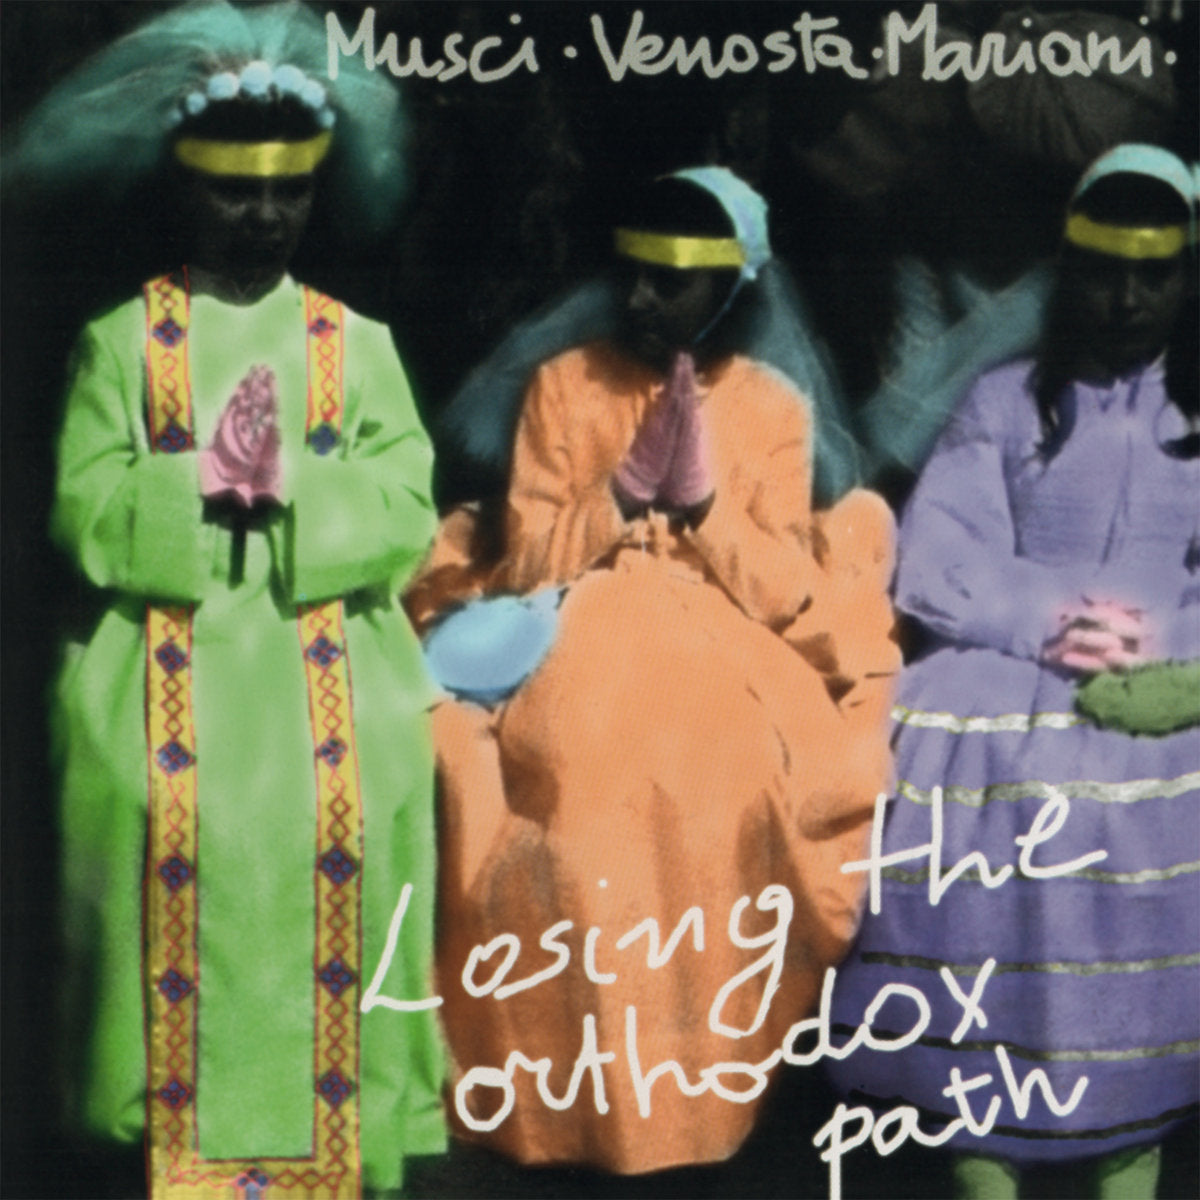 Roberto Musci, Giovanni Venosta, Massimo Mariani - Losing the Orthodox Path - LP